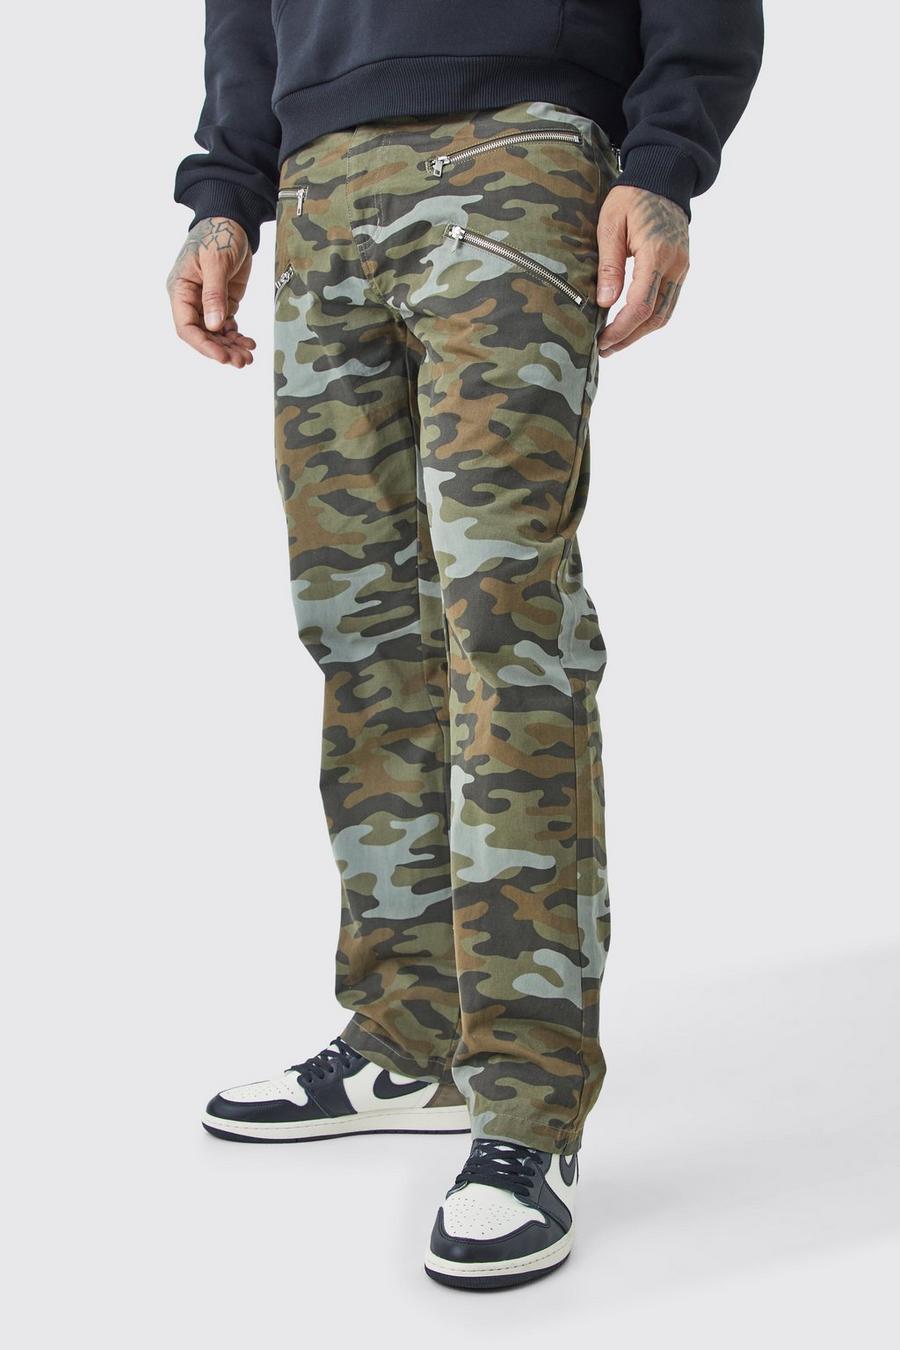 Pantaloni Tall dritti in twill in fantasia militare con inserti, zip e vita fissa, Multi image number 1